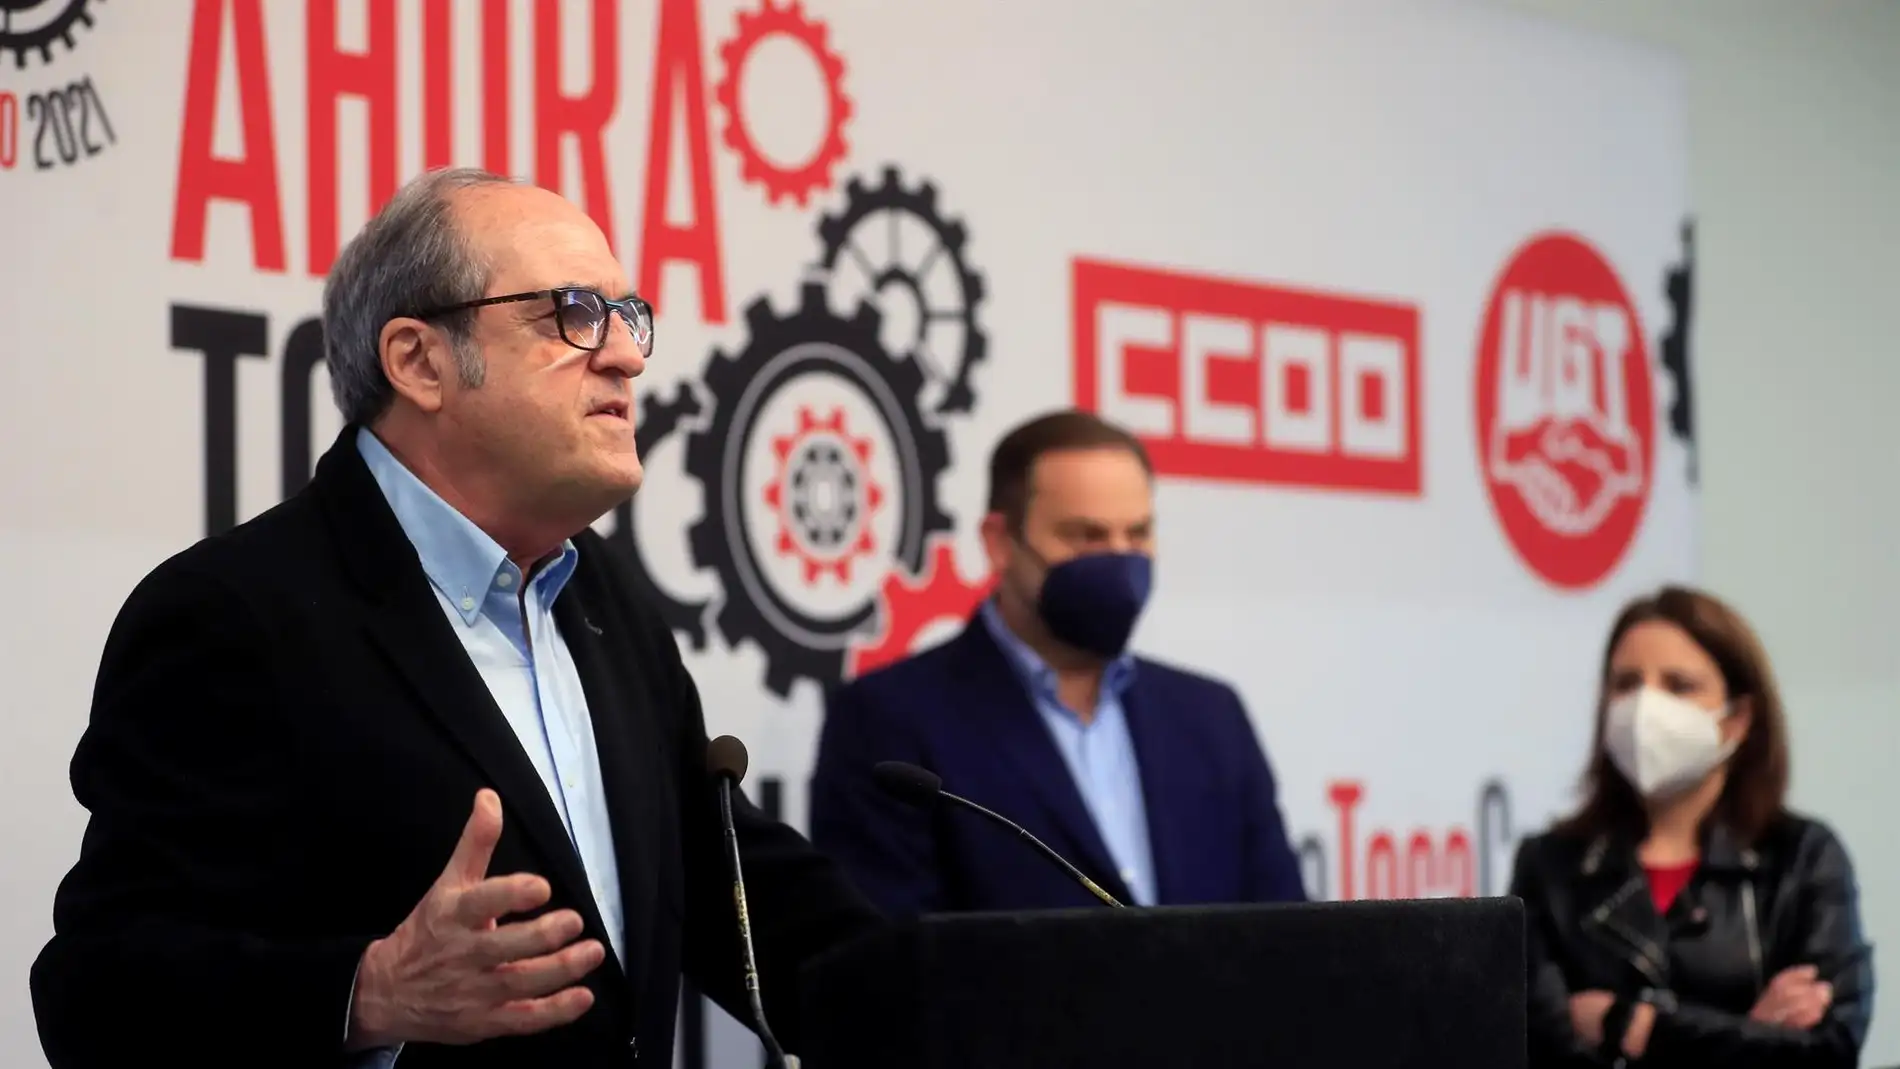 El PSOE llama a los trabajadores a luchar por los derechos "para que la derecha depredadora no nos los arrebate"